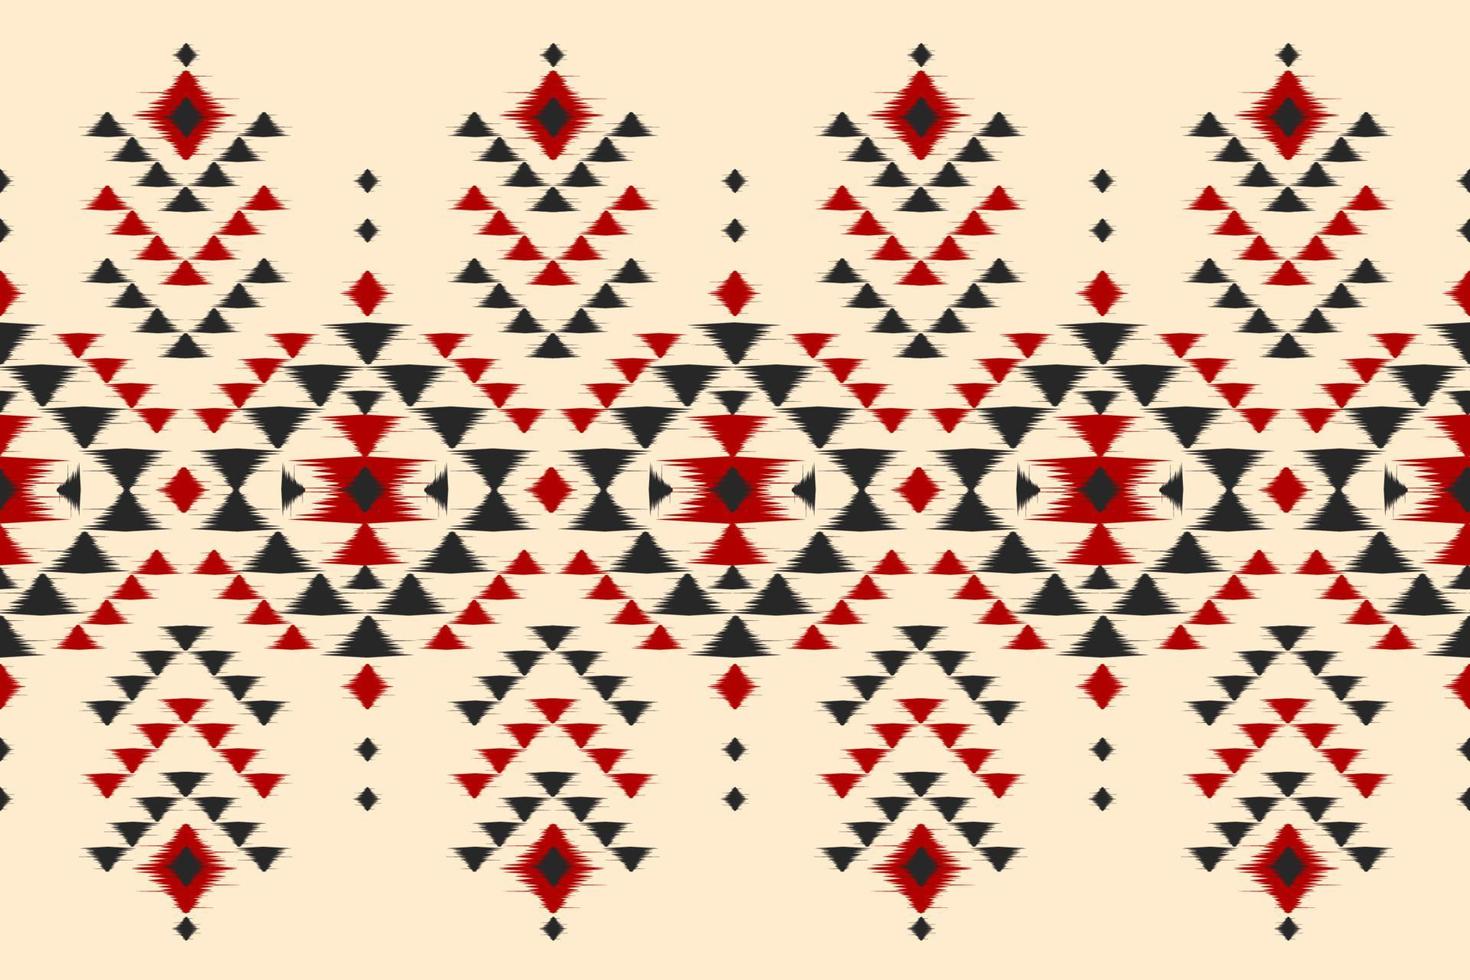 arte étnica ikat do tapete. padrão geométrico sem costura em tribal. estilo mexicano. vetor